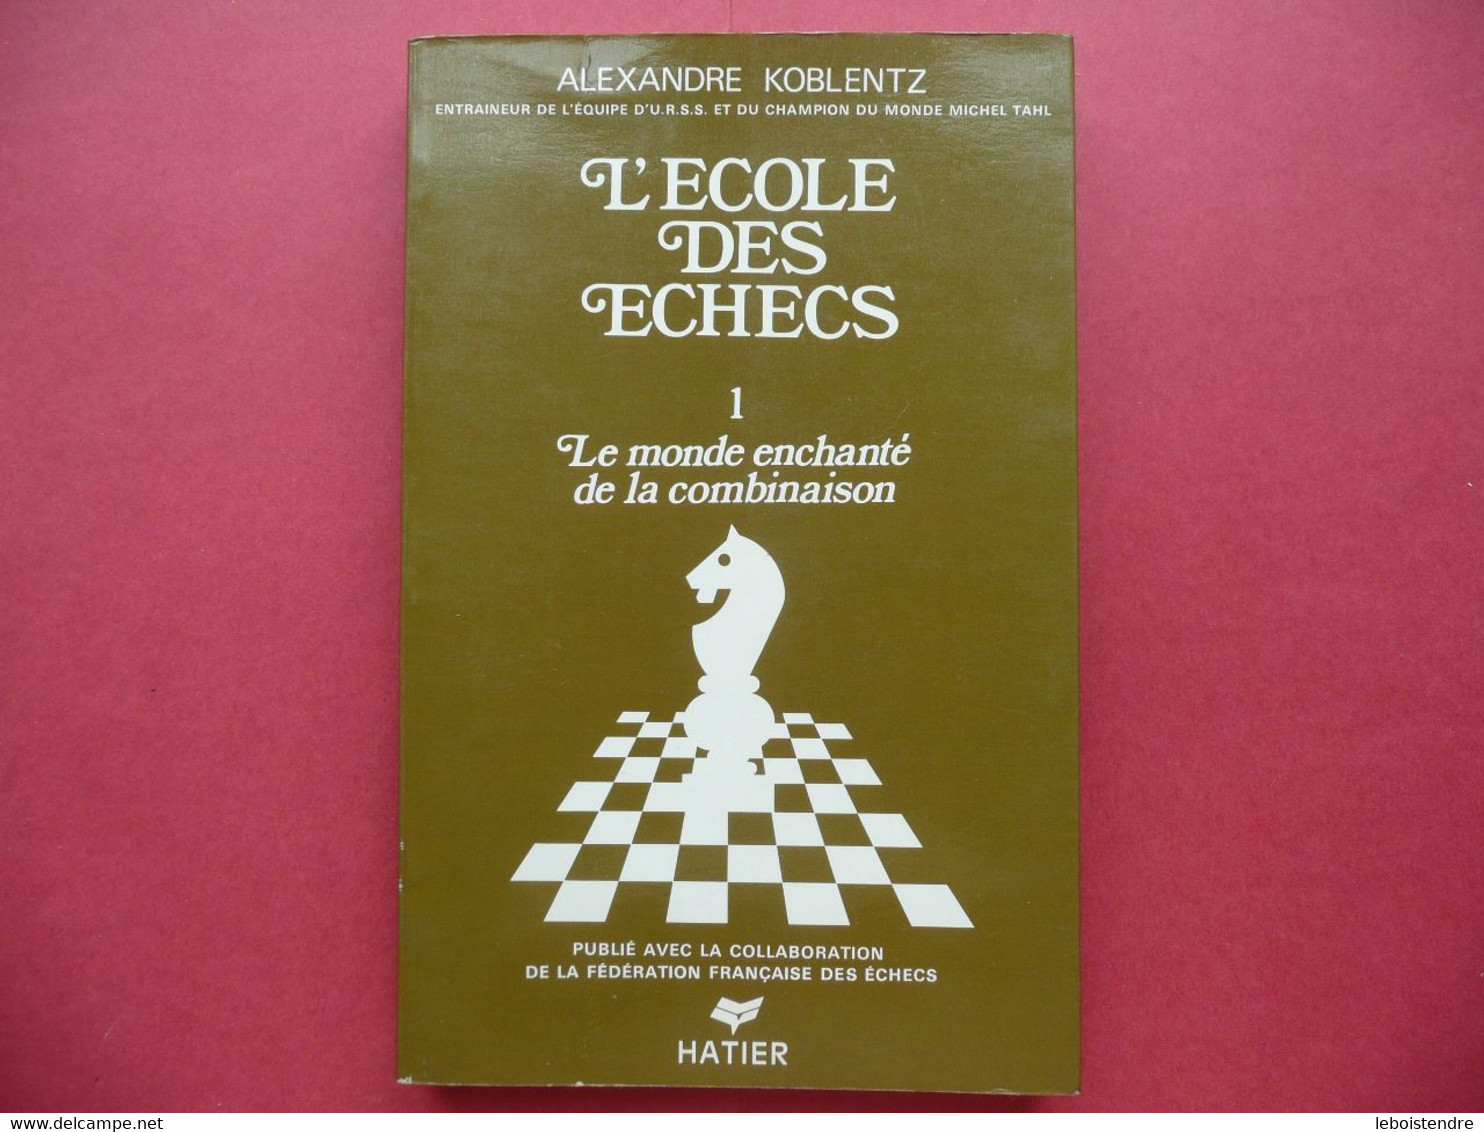 L ECOLE DES ECHECS 1 LE MONDE ENCHANTE DE LA COMBINAISON ALEXANDRE KOBLENTZ 1976 HATIER FEDERATION FRANCAISE DES ECHECS - Palour Games